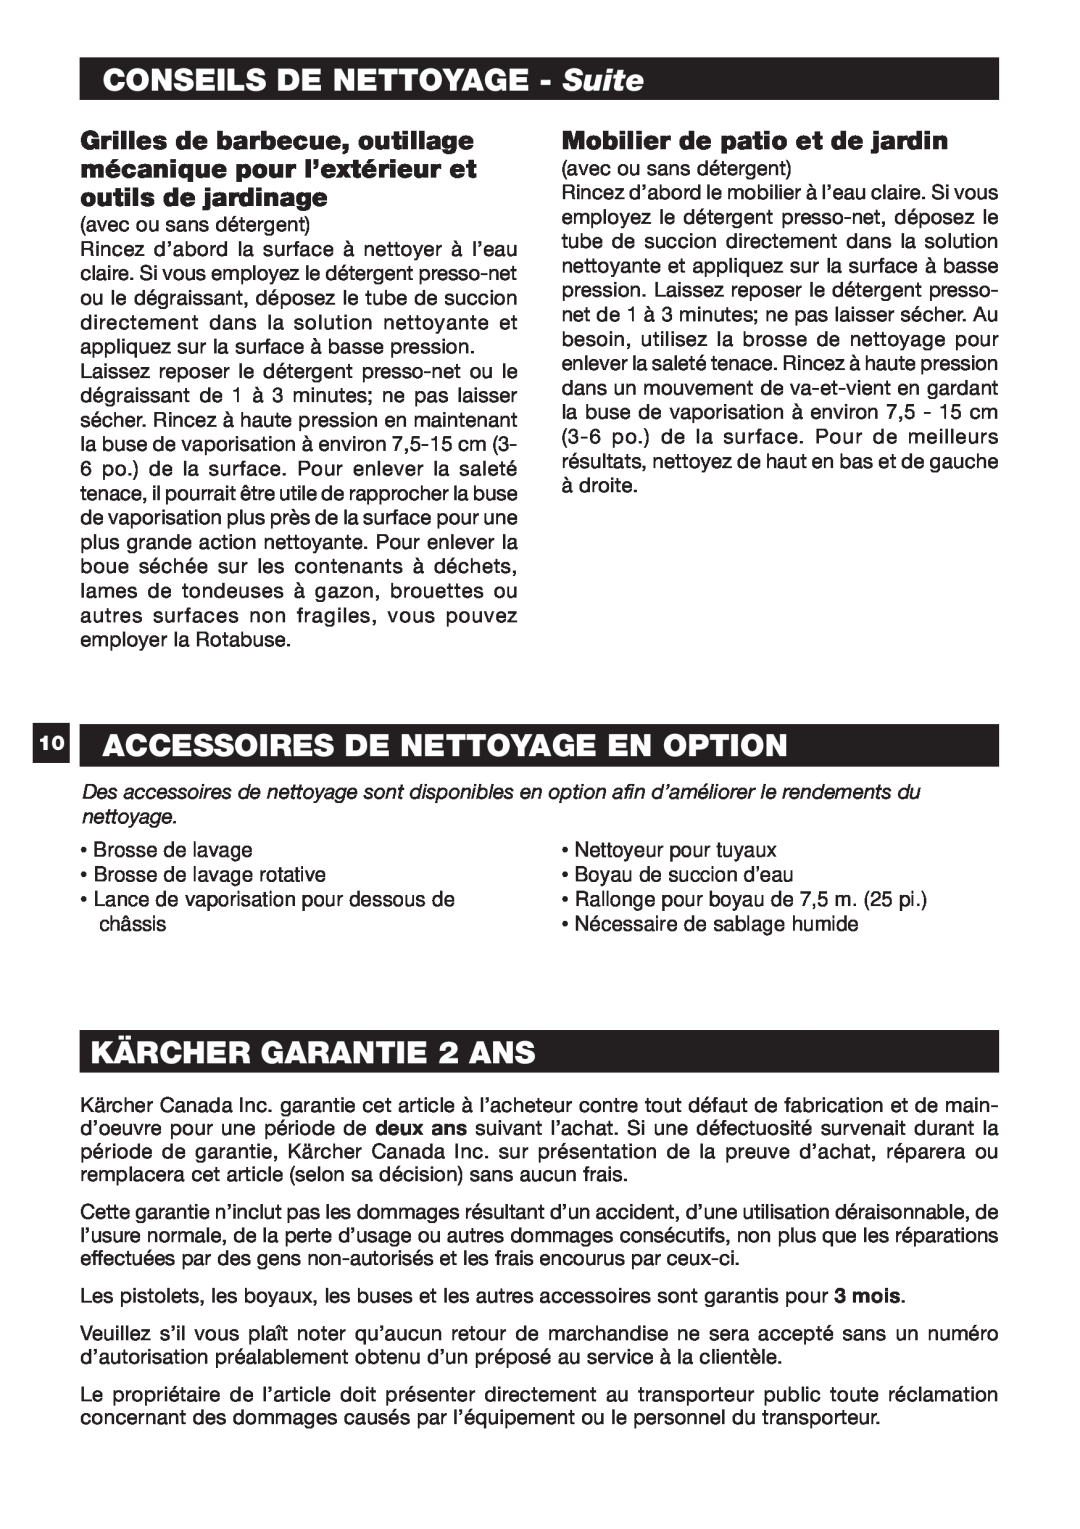 Karcher K 5.50 M specifications CONSEILS DE NETTOYAGE - Suite, 10ACCESSOIRES DE NETTOYAGE EN OPTION, KÄRCHER GARANTIE 2 ANS 